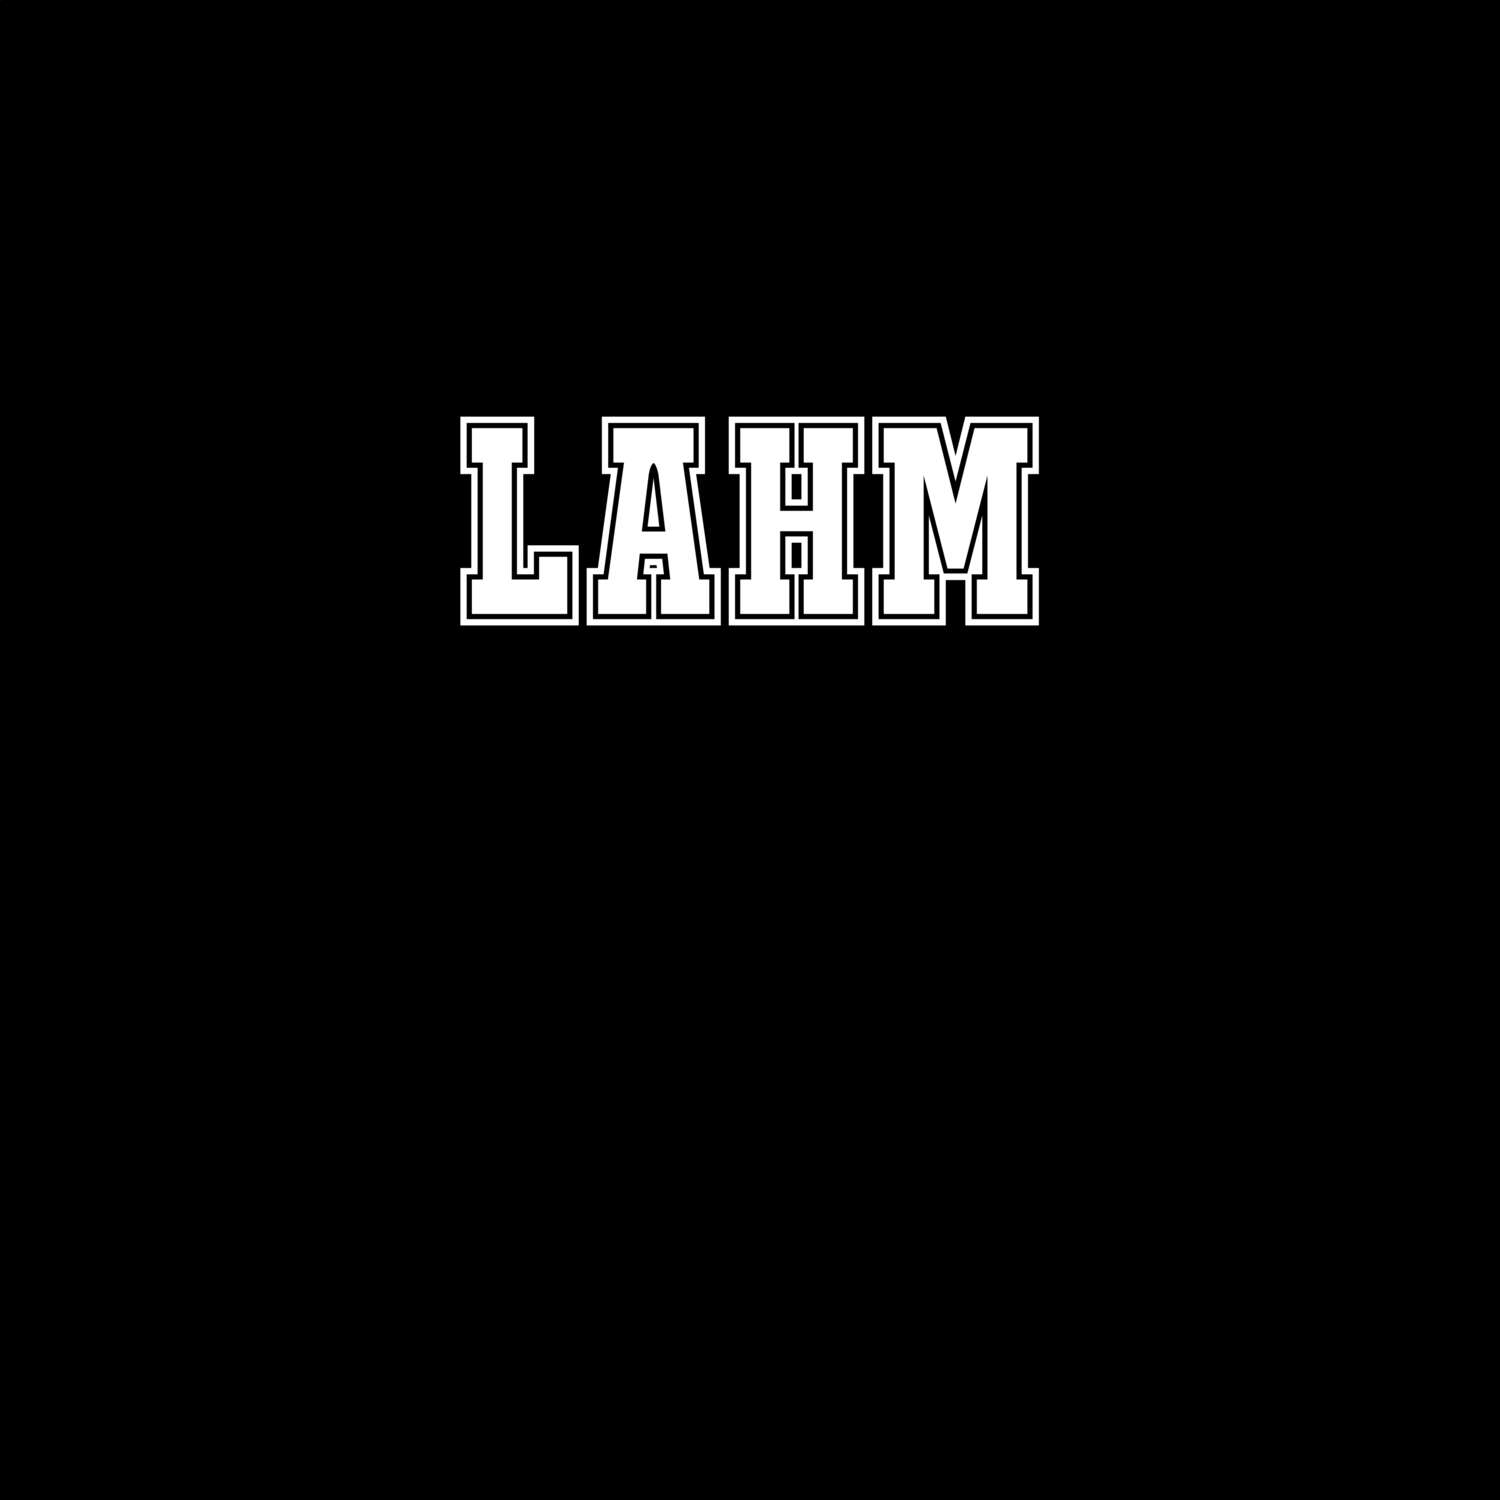 Lahm T-Shirt »Classic«